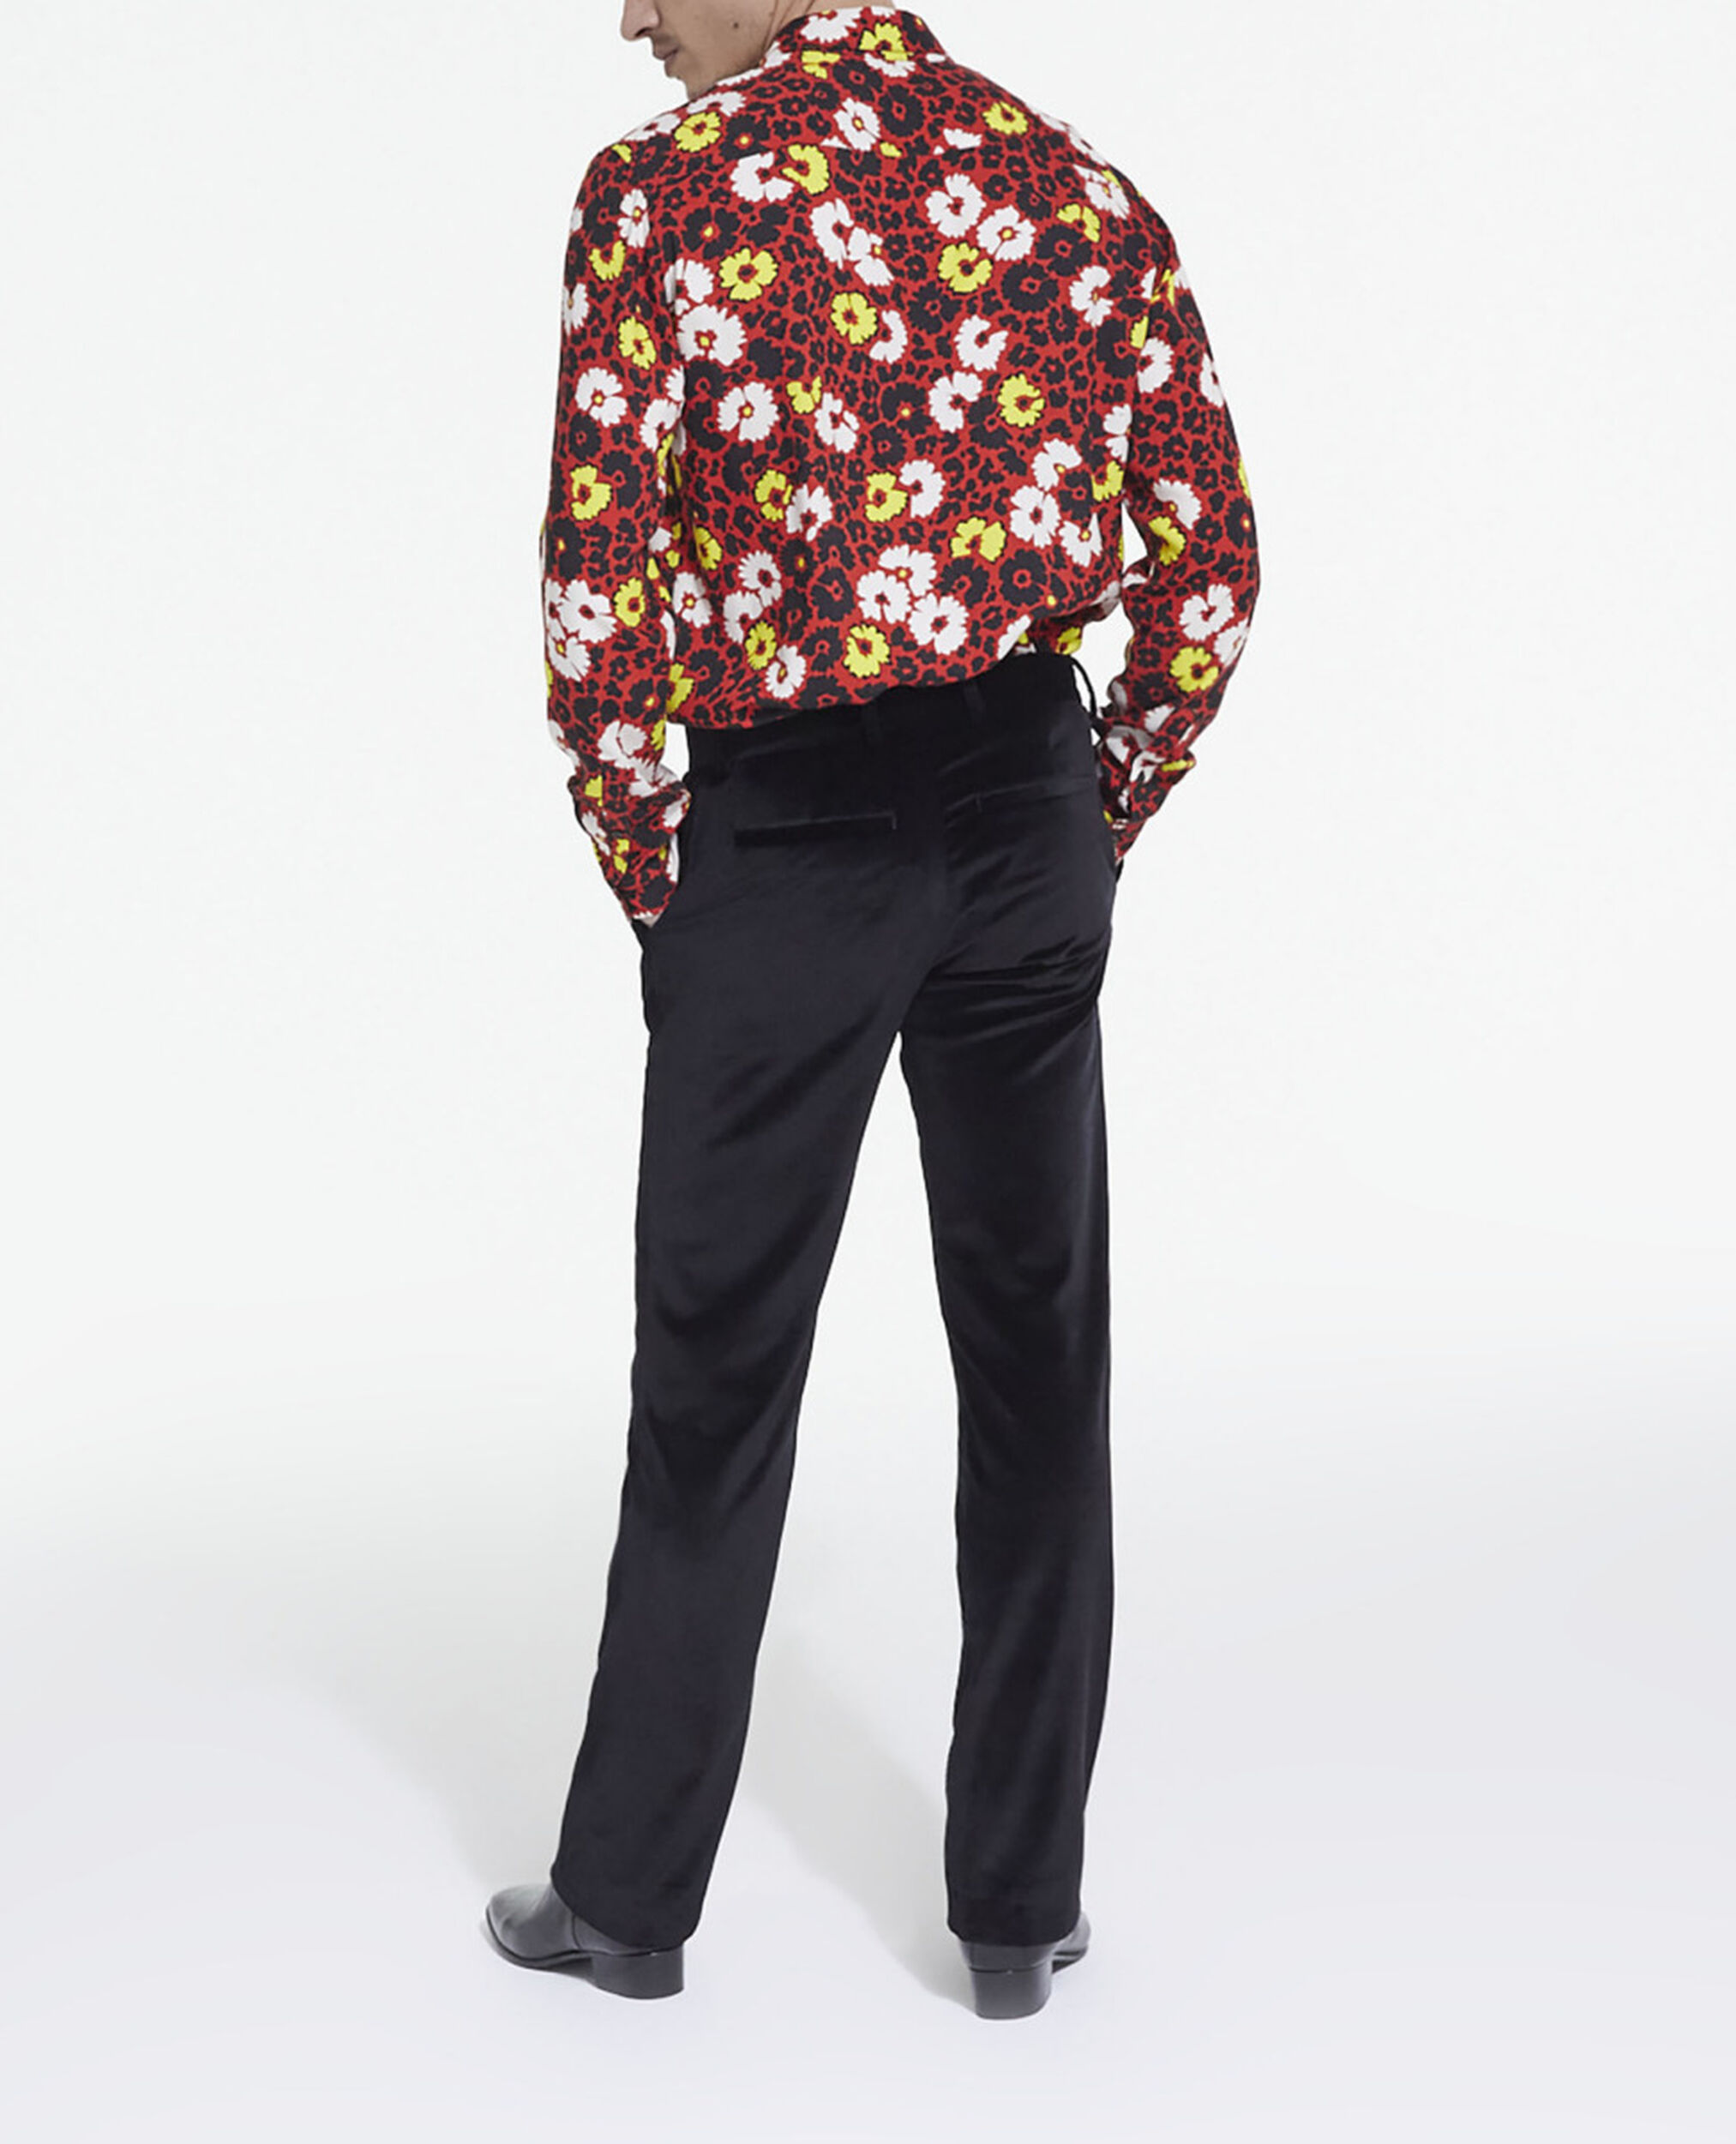 Camisa estampado floral con cuello clásico, MULTICOLORE/RED, hi-res image number null